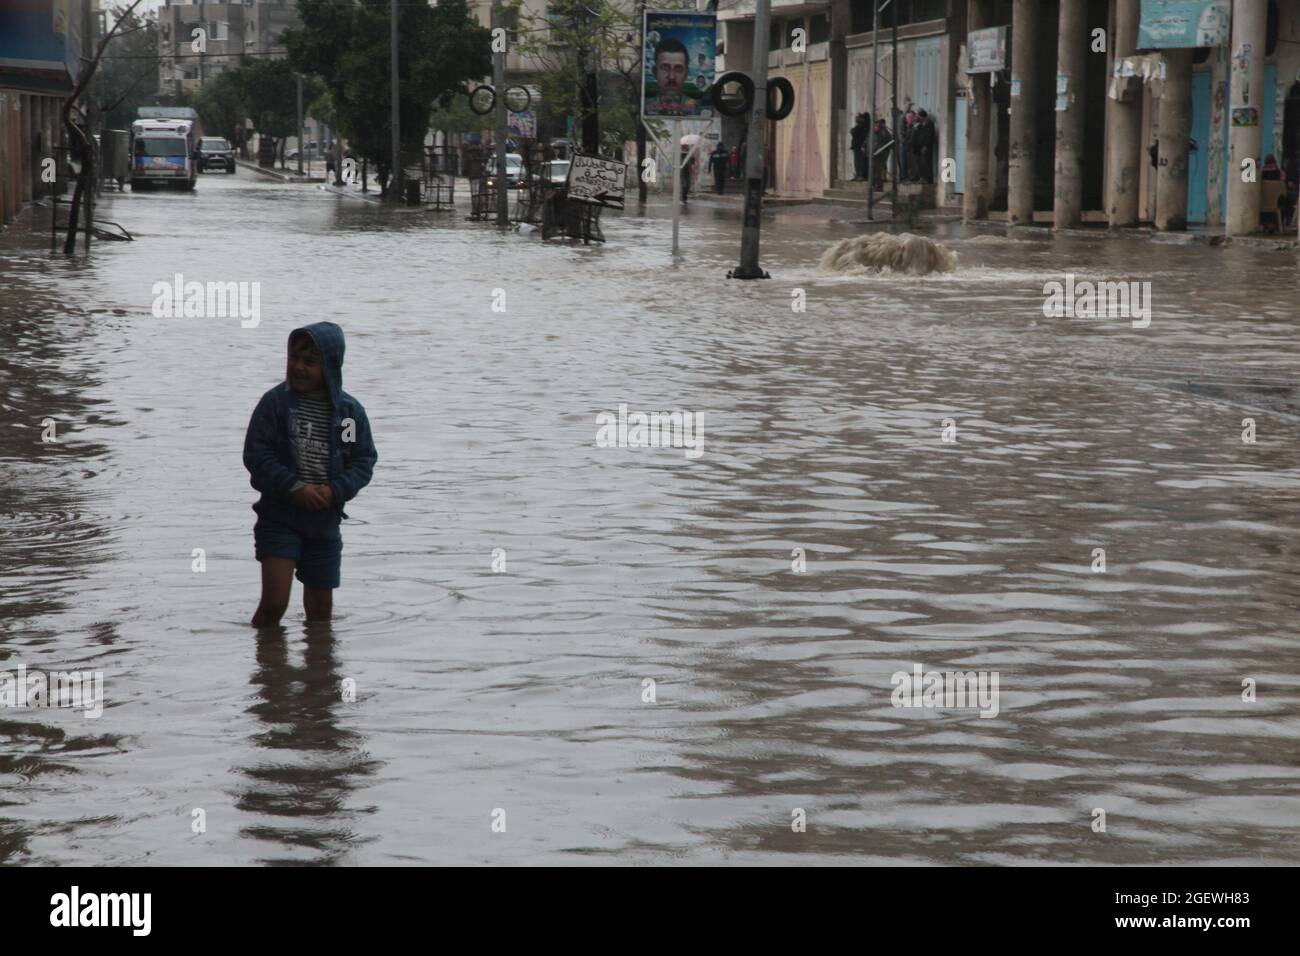 Los niños palestinos caminan en agua inundada. Ciudad de Gaza. Foto de stock